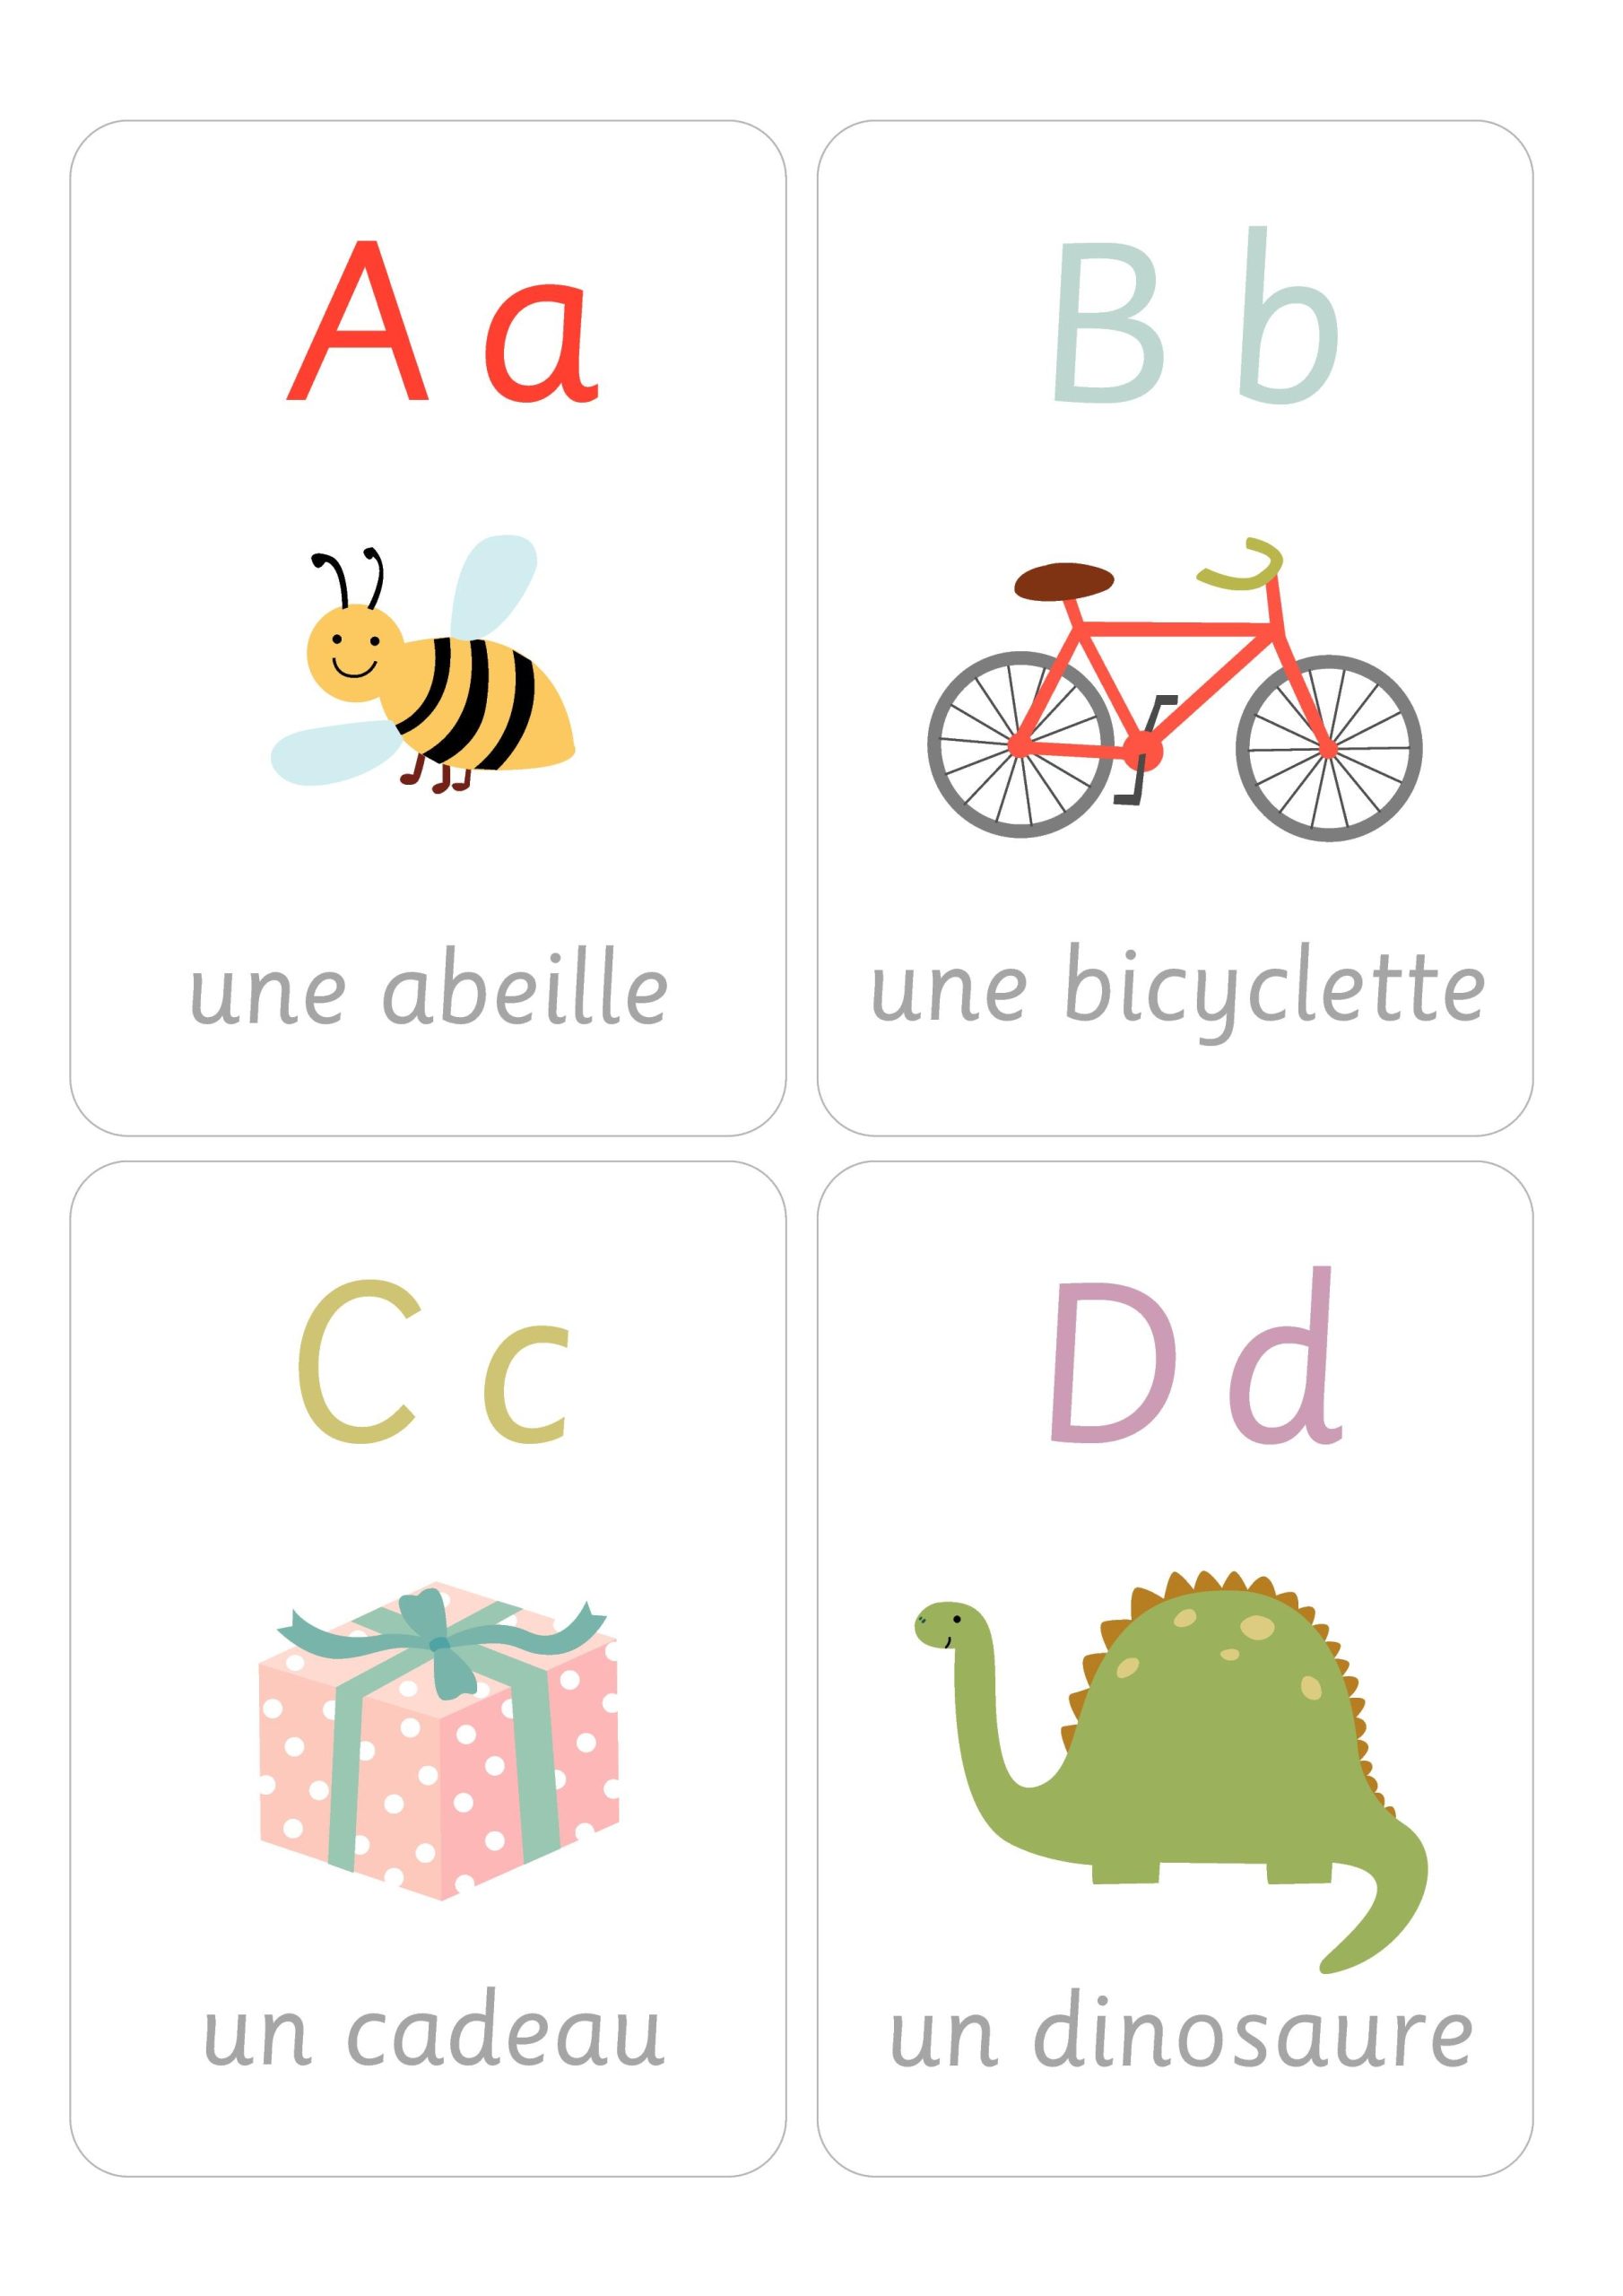 Французский алфавит: изображения в хорошем качестве